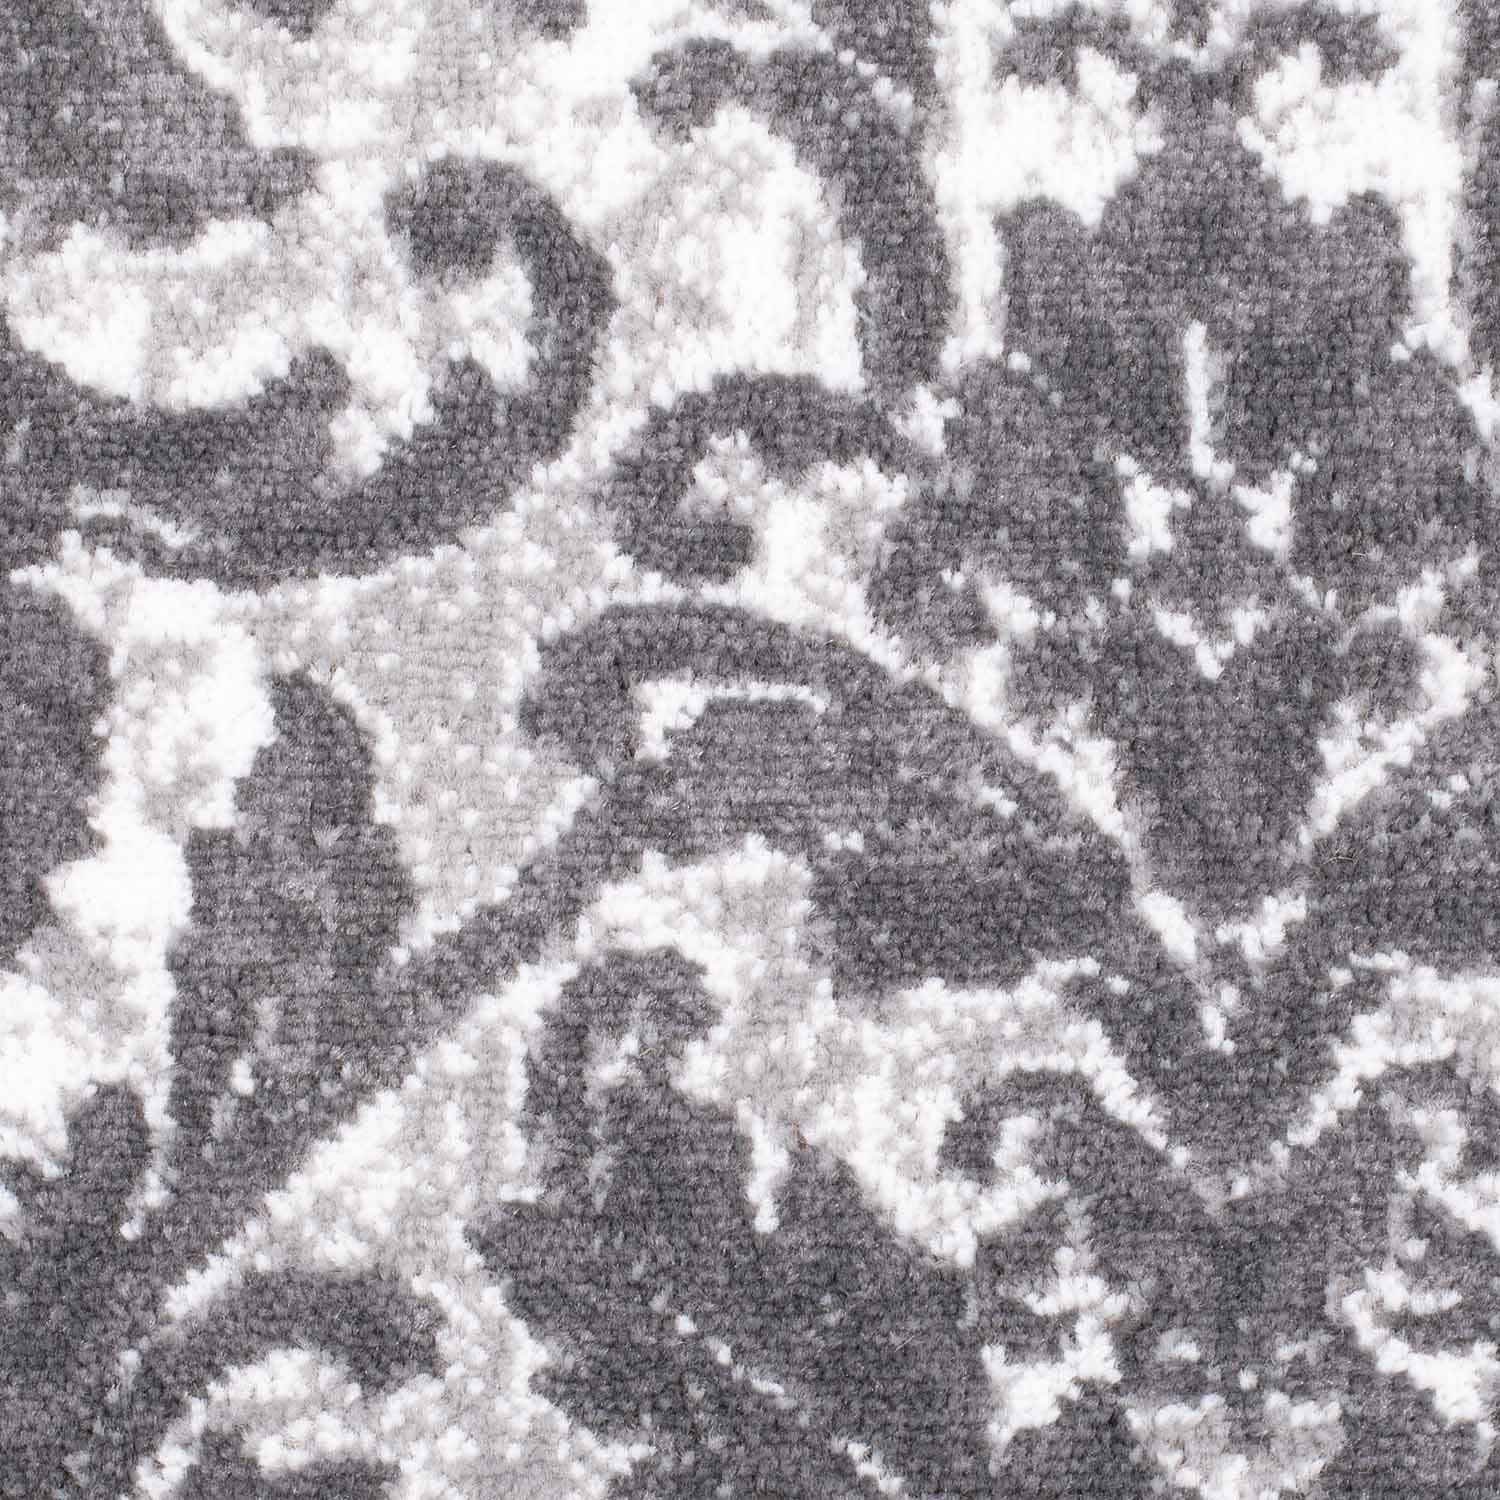 Carpet City Teppich »Timeless 7691«, rechteckig, Kurzflor, Floral, Ornamenten, ideal für Wohnzimmer & Schlafzimmer